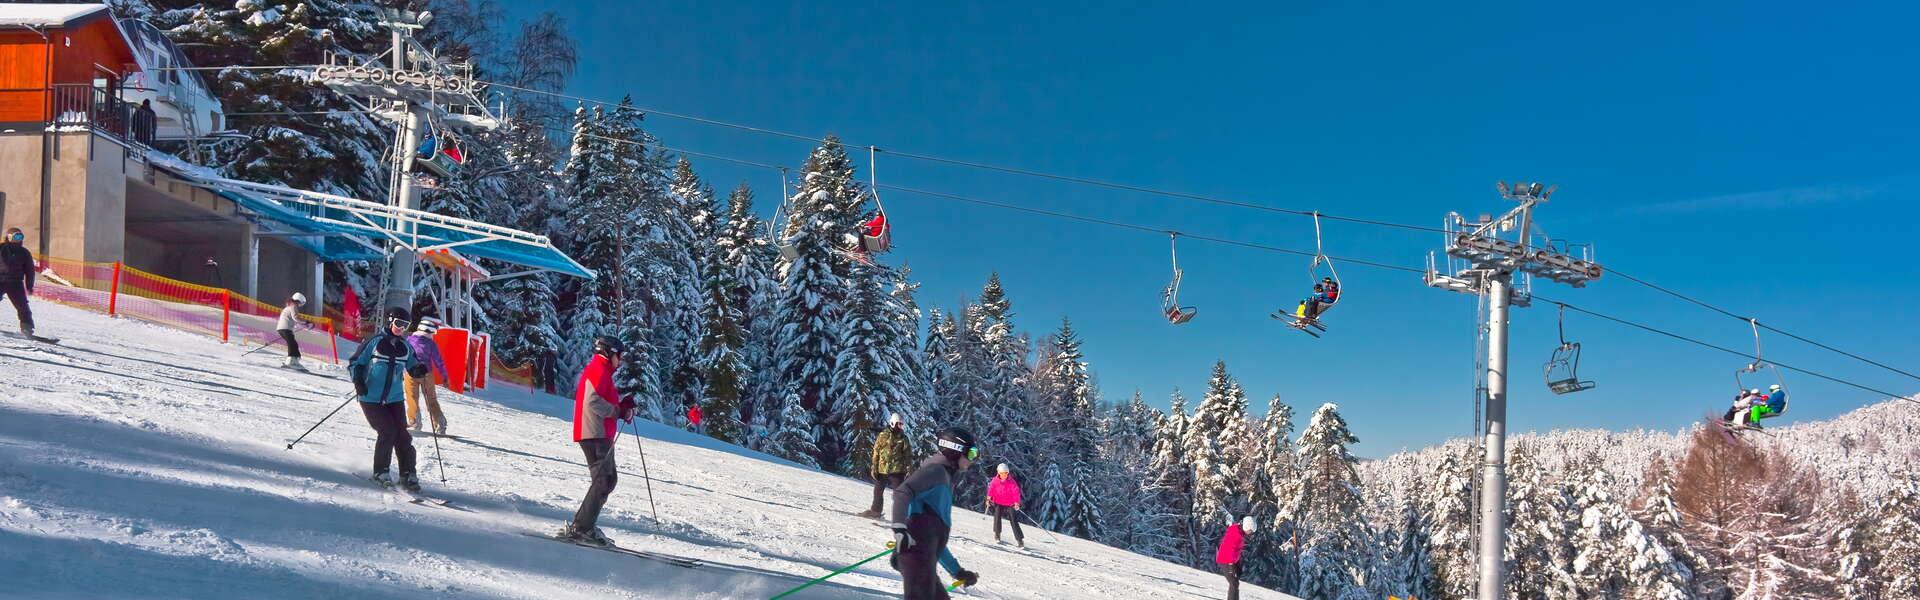 Imagen: Stacje narciarskie w Małopolsce – każdy znajdzie odpowiednią dla siebie